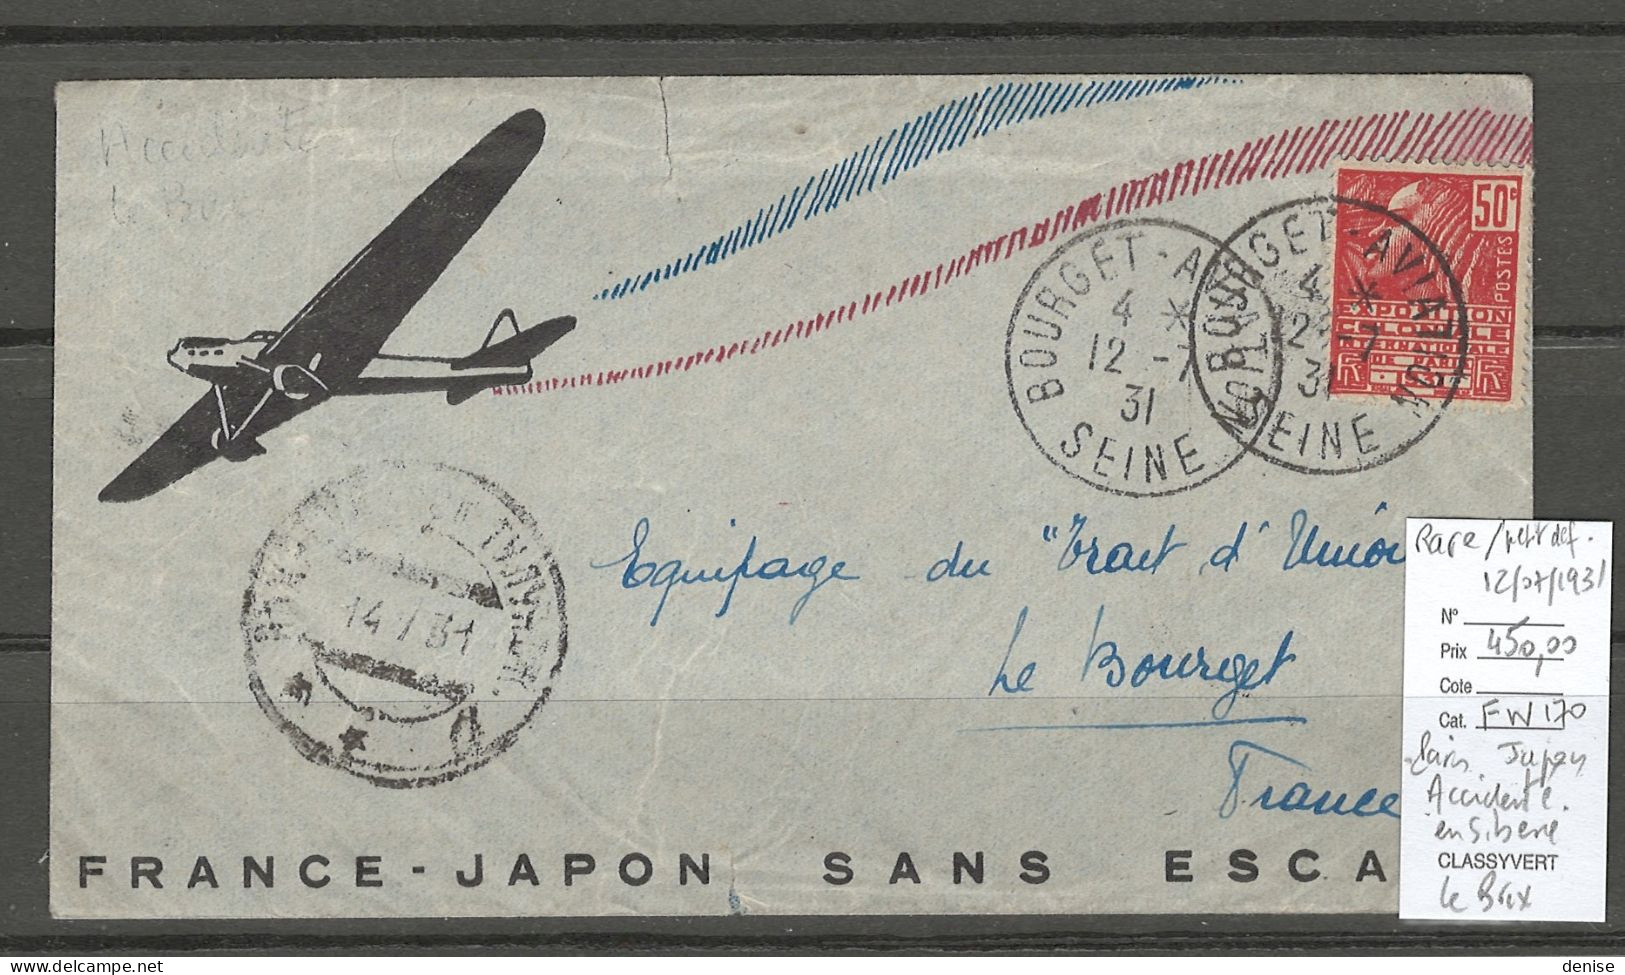 France - Japon - Sans Escale - ACCIDENTE EN SIBERIE - 50 % DE REMISE - LE BRIX - 12/07/1931